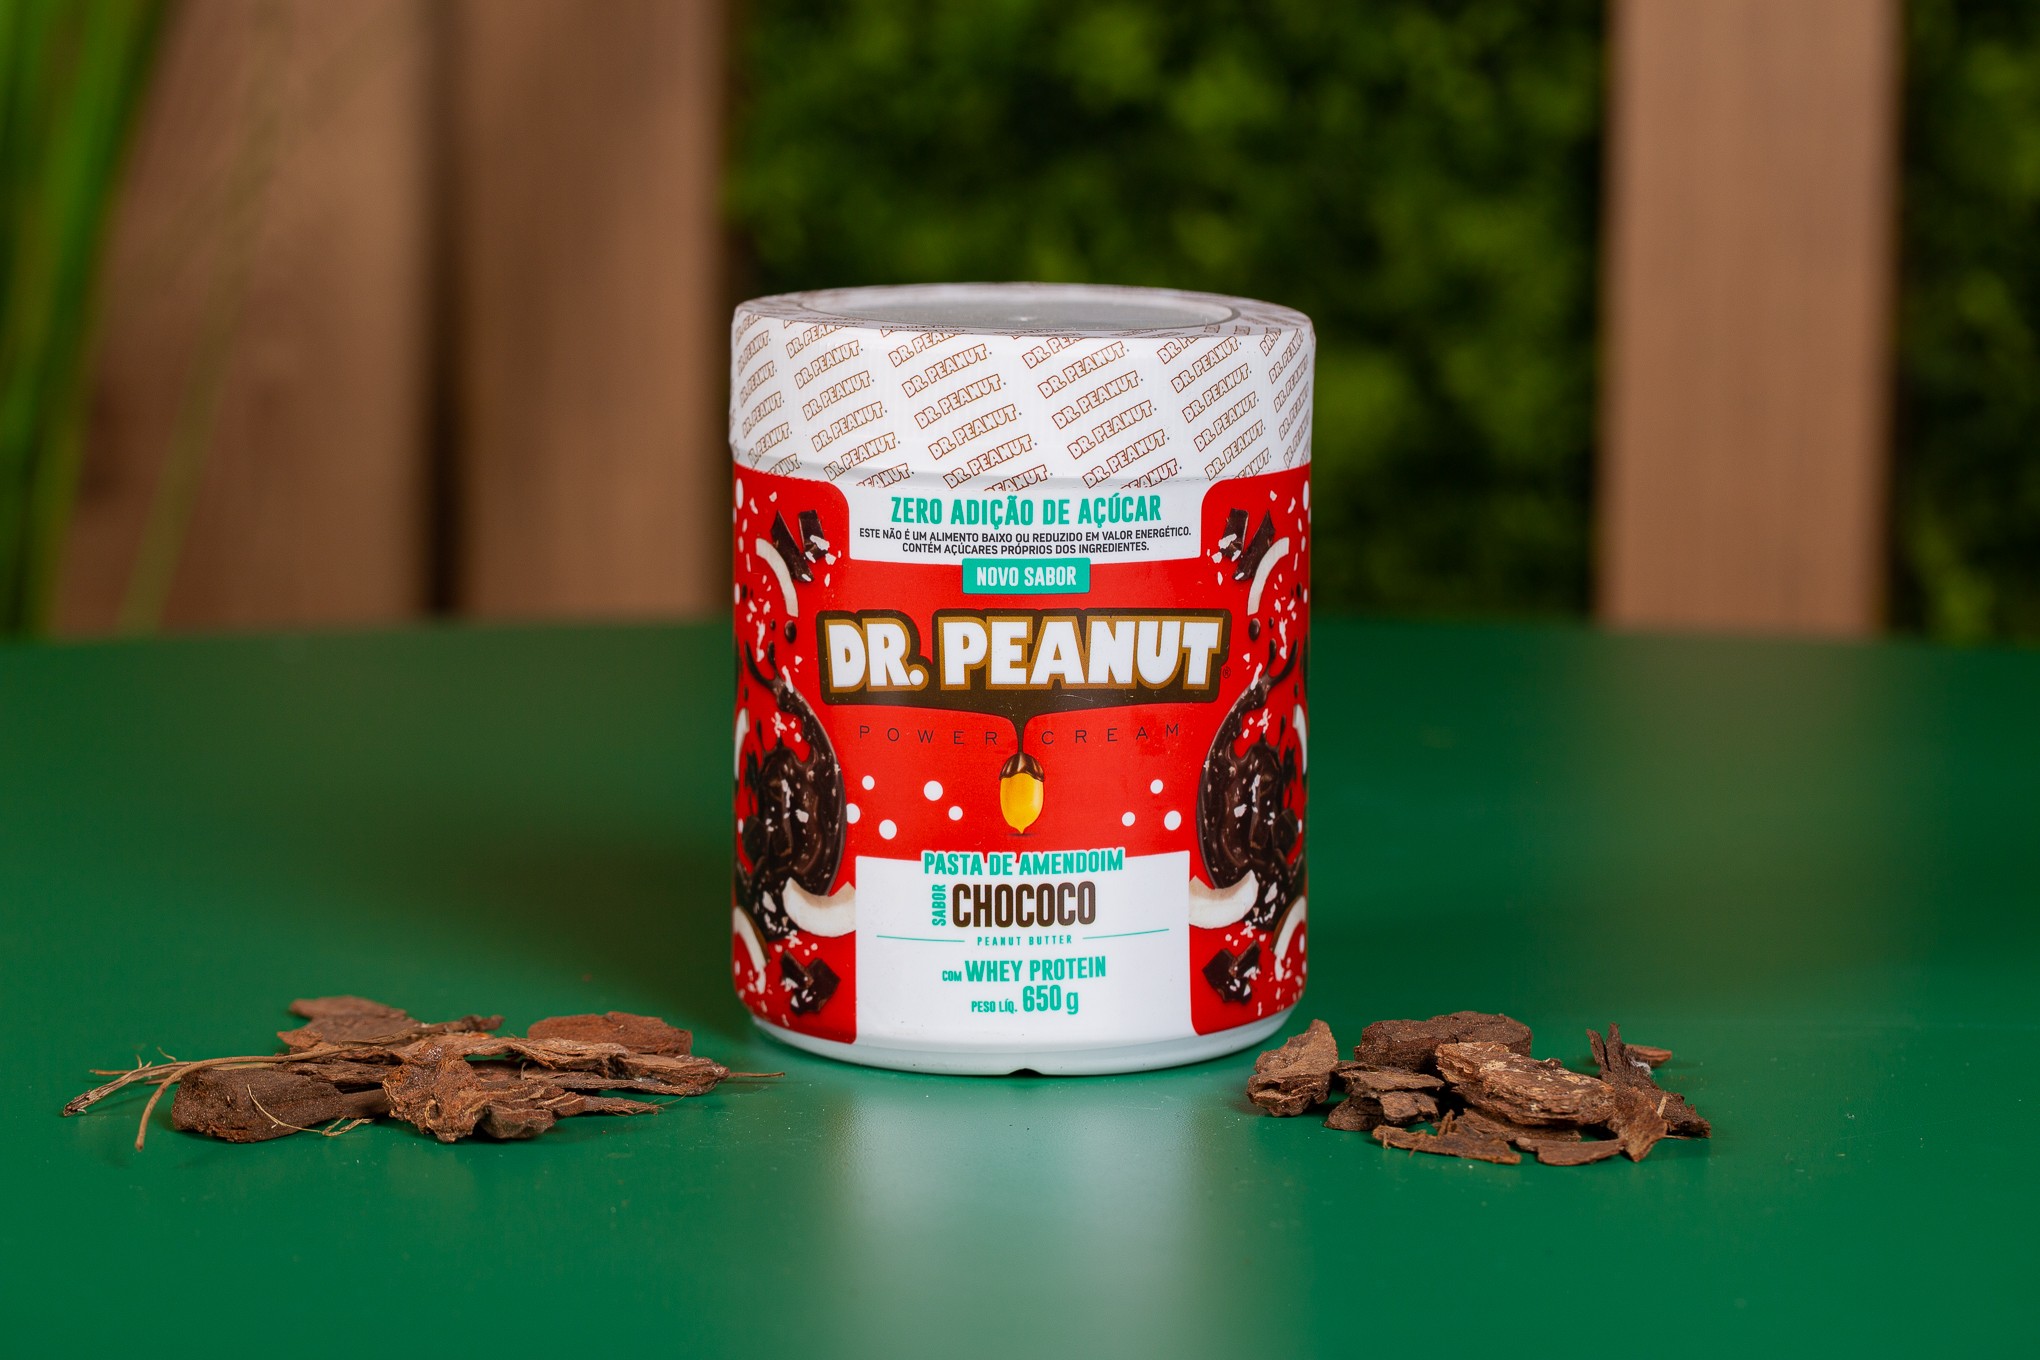 Dr Peanut Pasta De Amendoim Com Whey Protein Sabor Chocolate Branco 650g